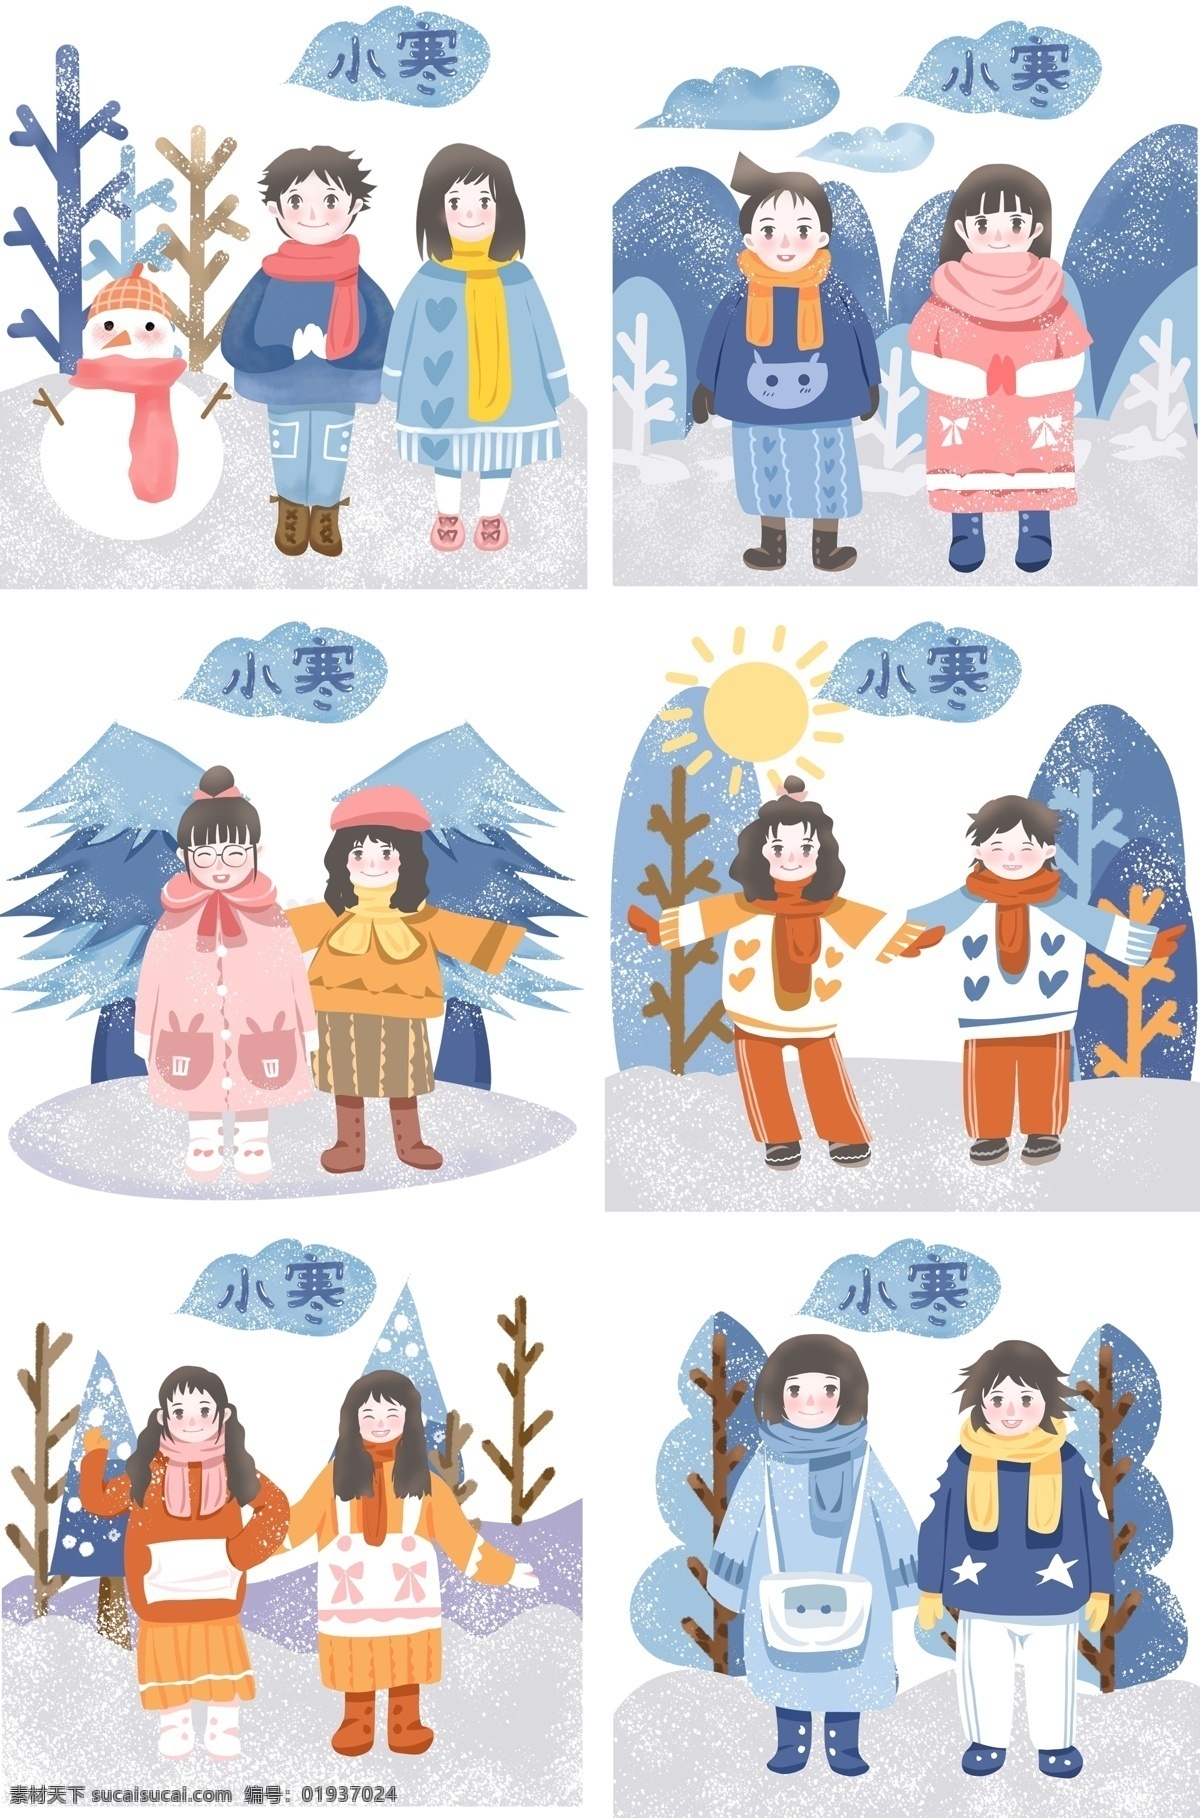 雪地 暖 阳 小寒 节气 图 二十四节气 中国传统 儿童插画 手绘卡通人物 可爱女孩 马卡龙色 冬季风景